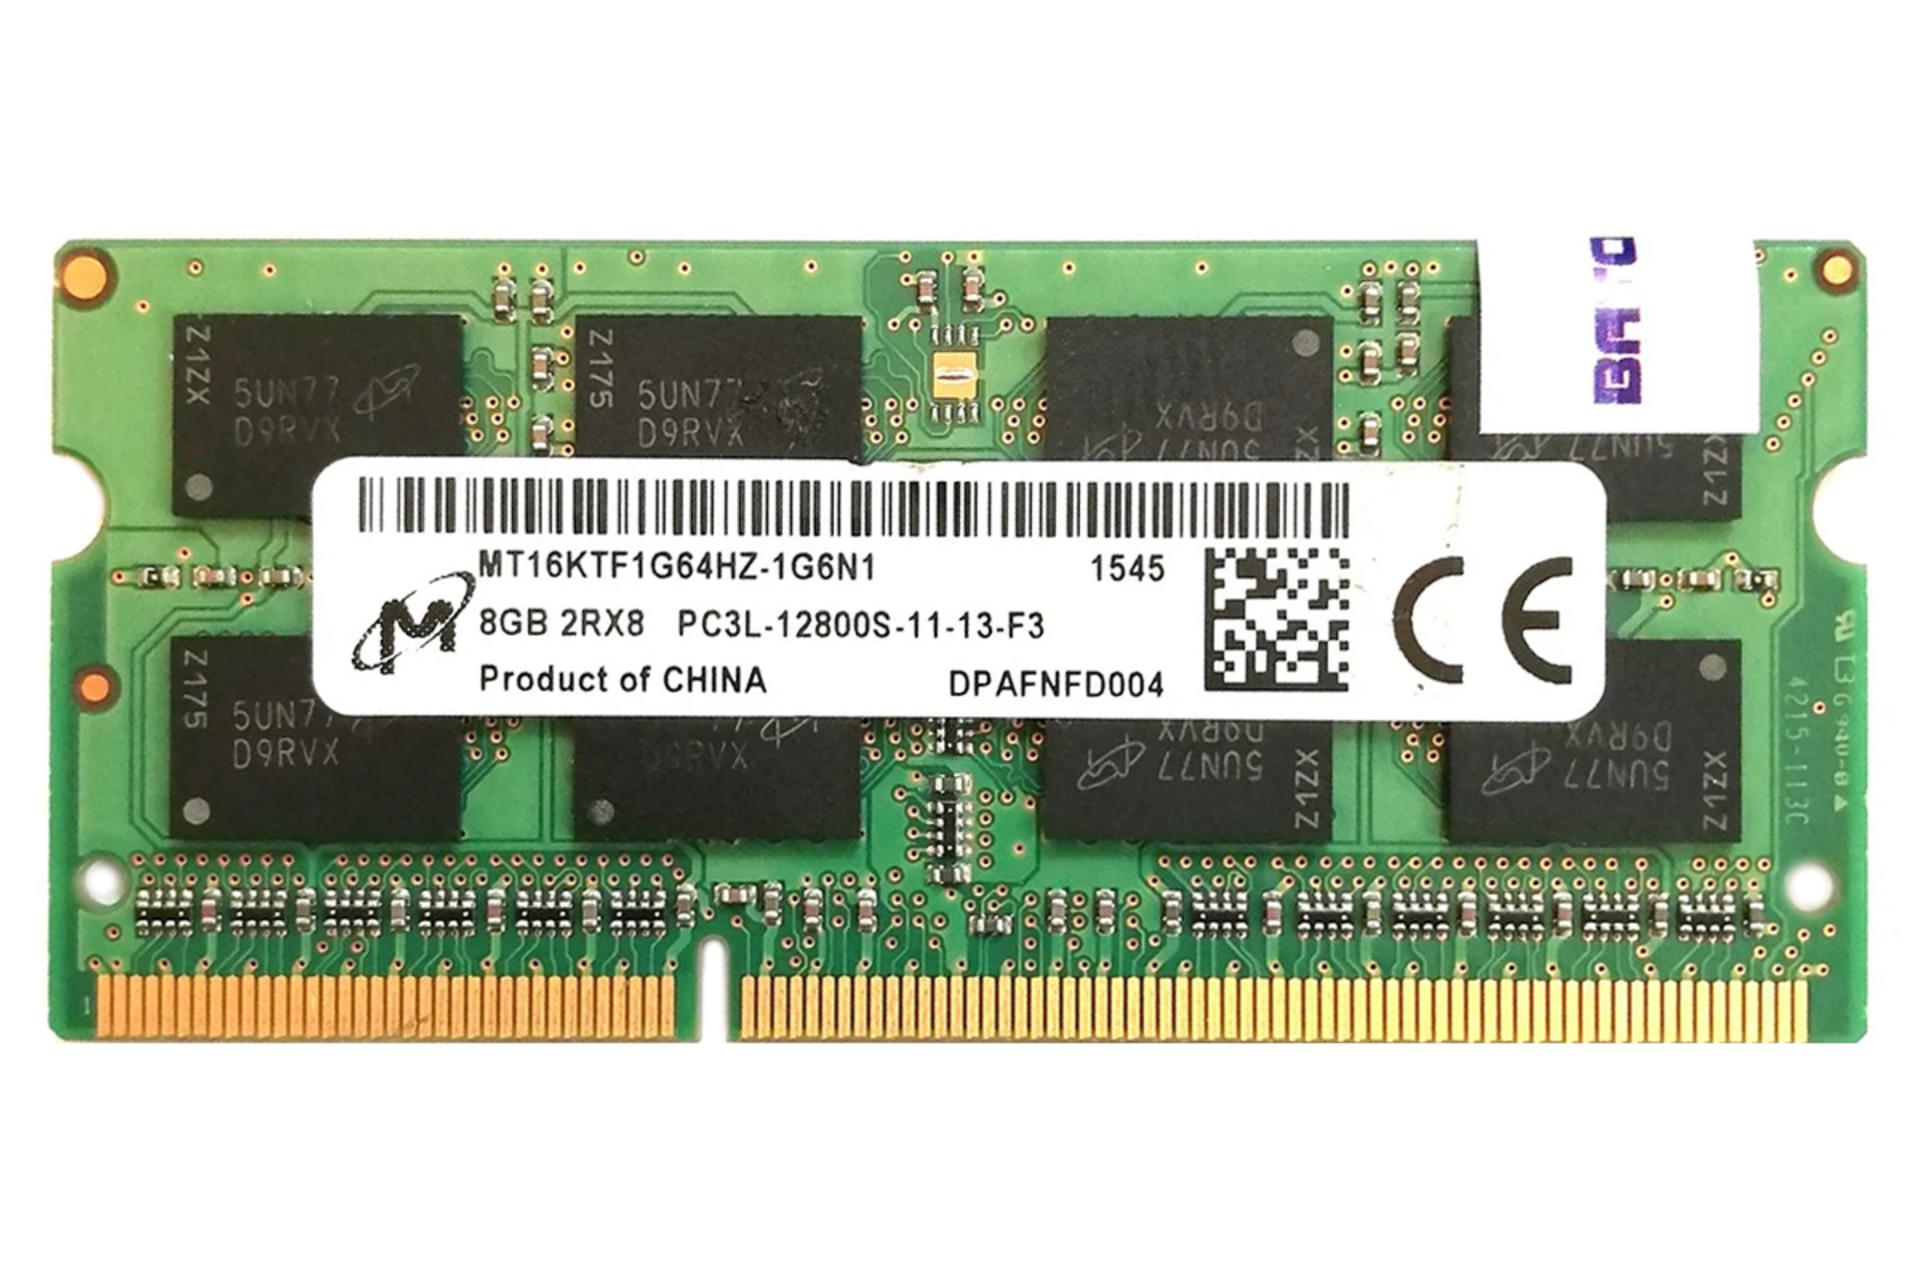 رم مایکرون MT16KTF1G64HZ-1G6N1 ظرفیت 8 گیگابایت از نوع DDR3L-1600